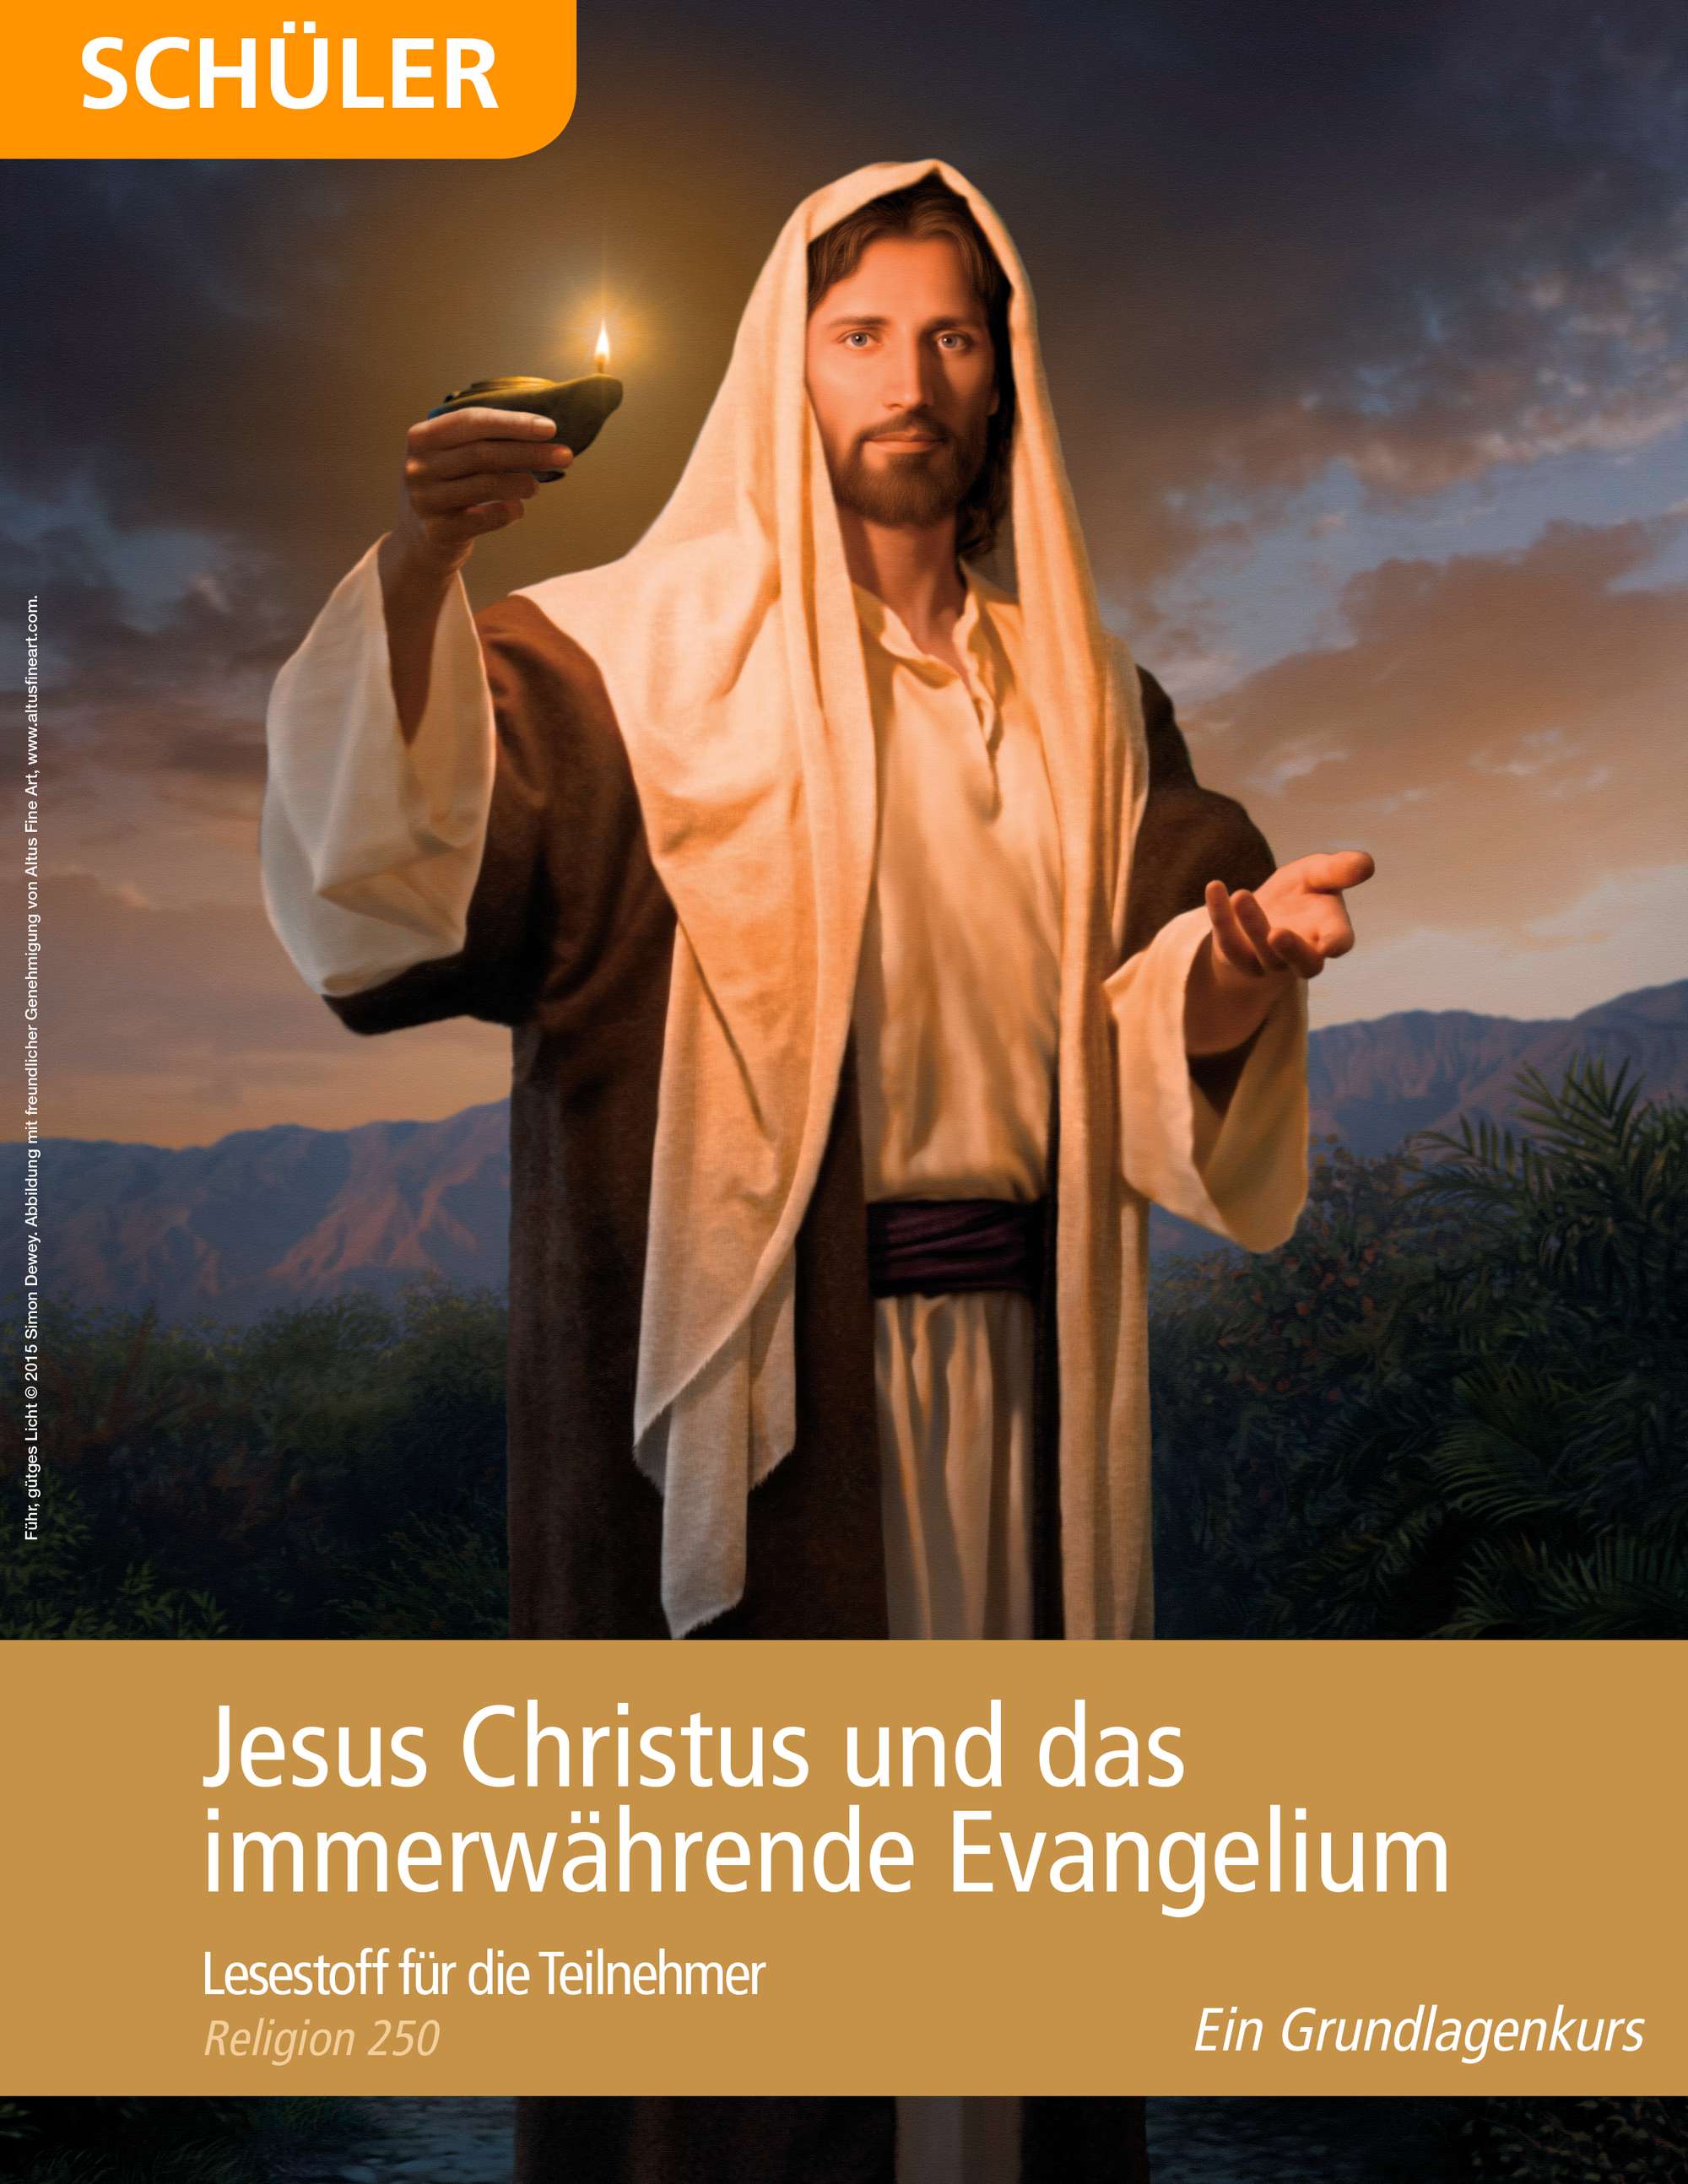 Jesus Christus und das immerwährende Evangelium – Lesestoff für die Teilnehmer (Religion 250)